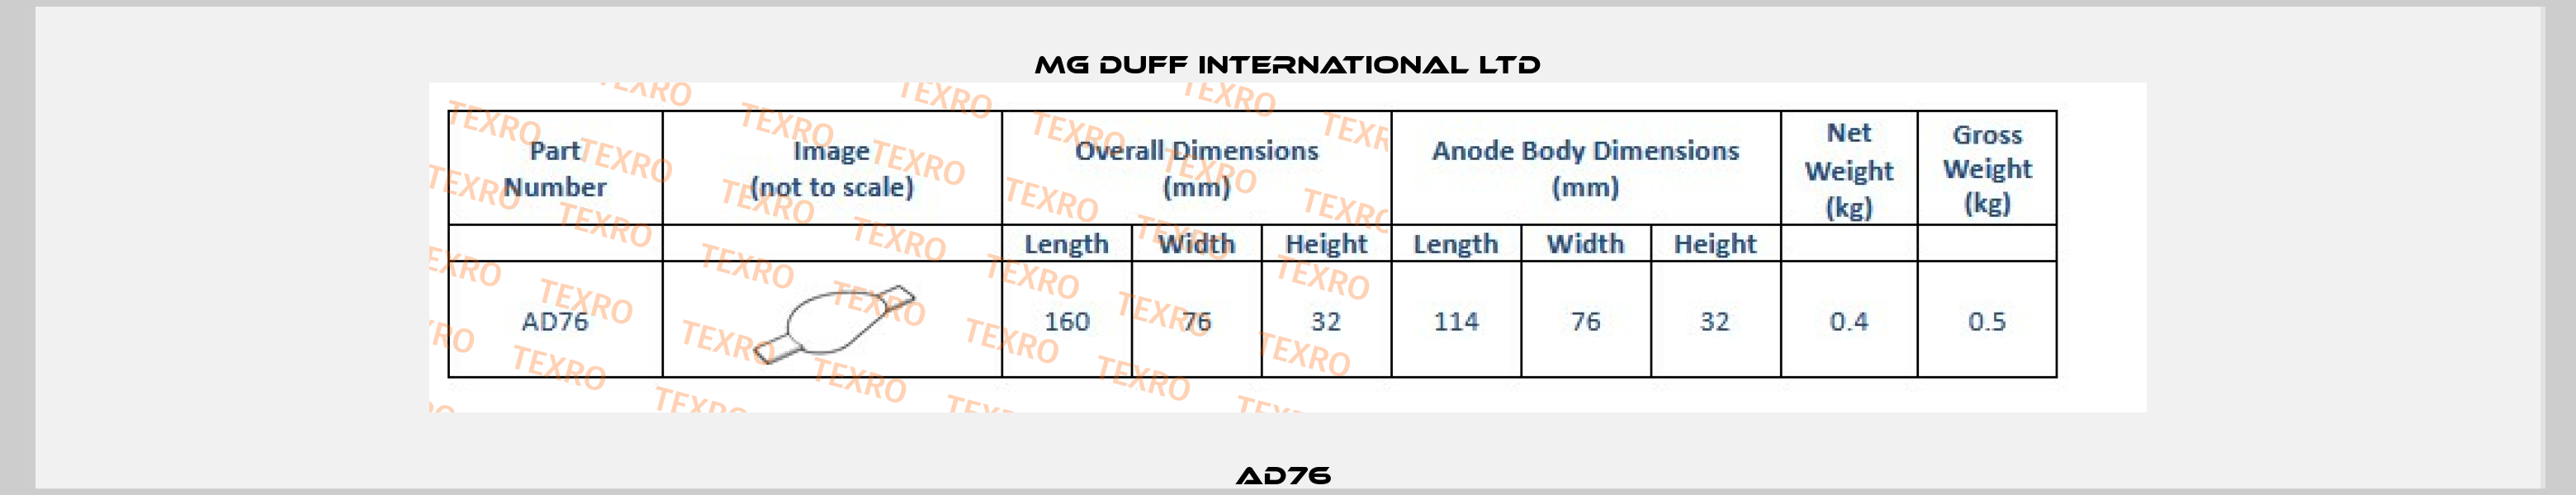 AD76  MG DUFF INTERNATIONAL LTD